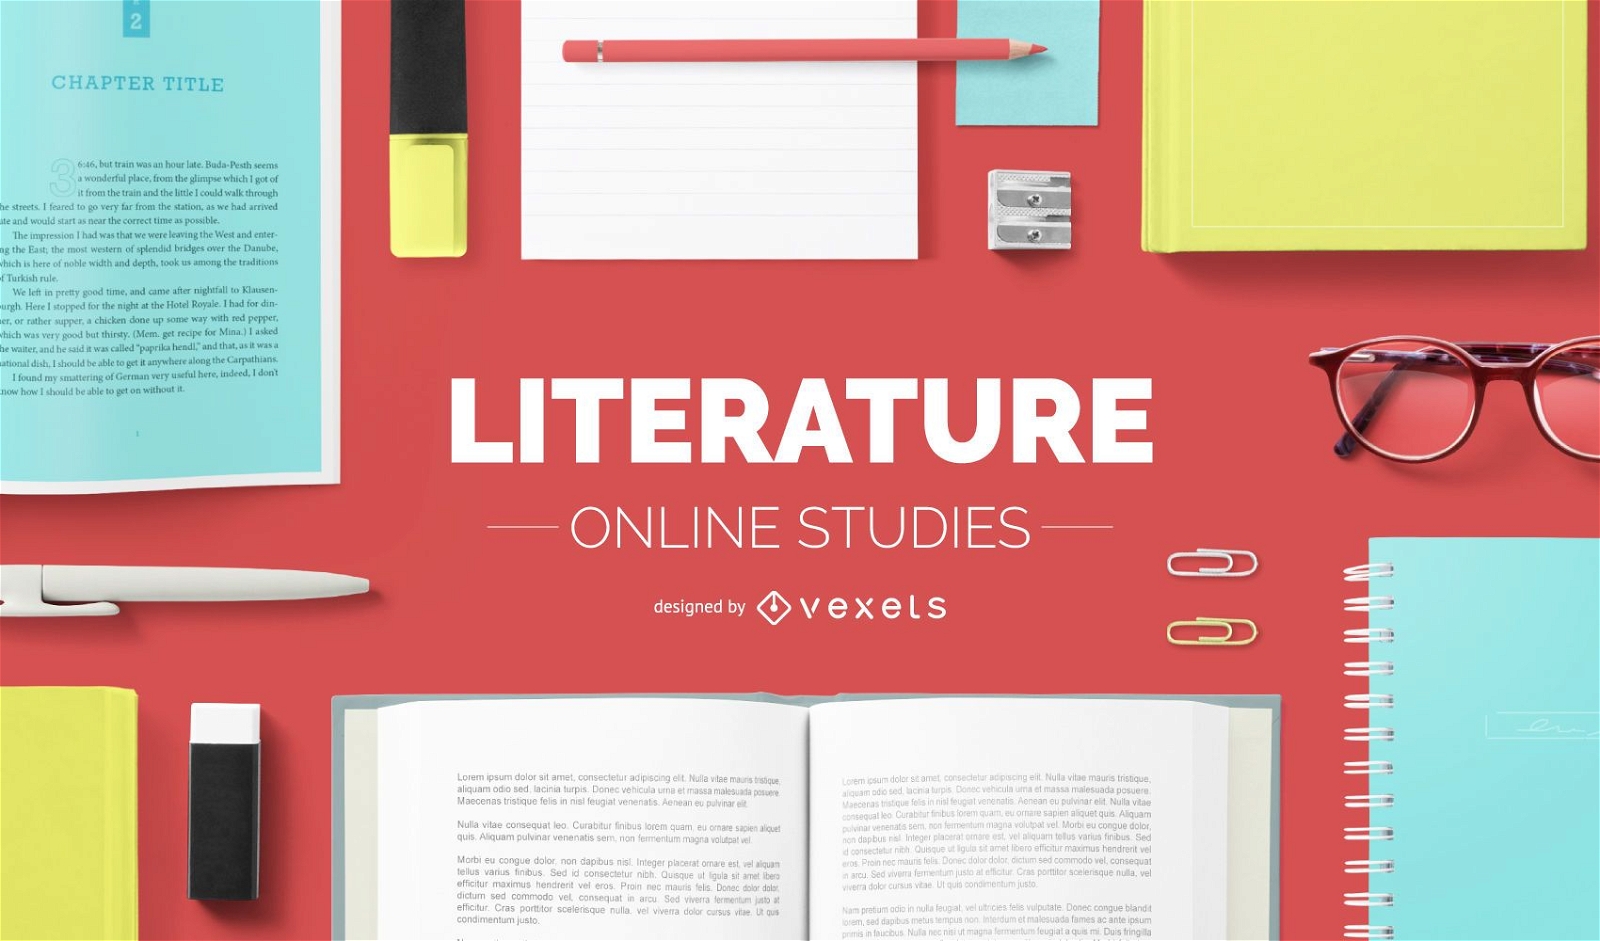 Literature online studies cover design